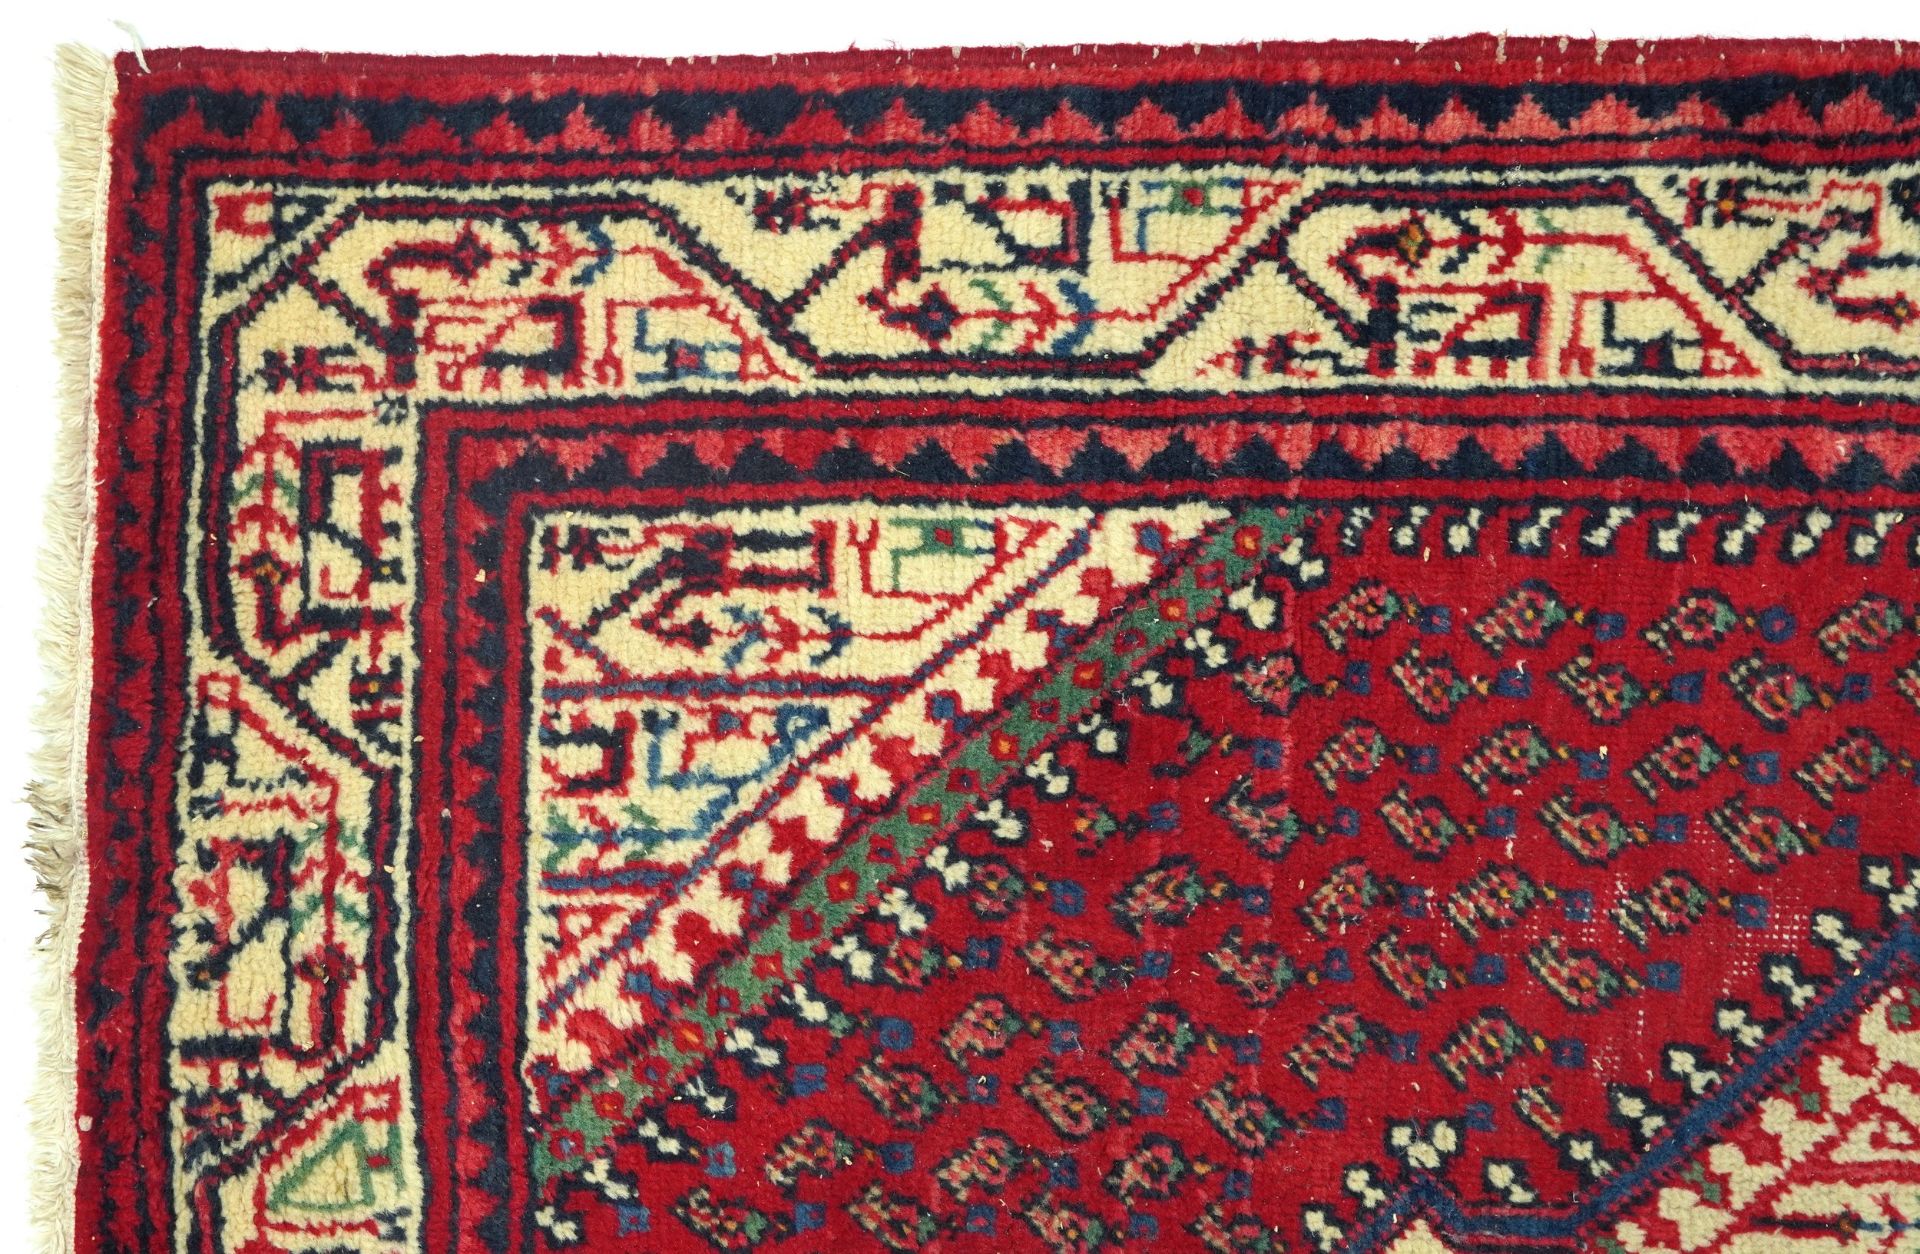 Rectangular Middle Eastern red ground rug, 155cm x 105cm - Bild 2 aus 6